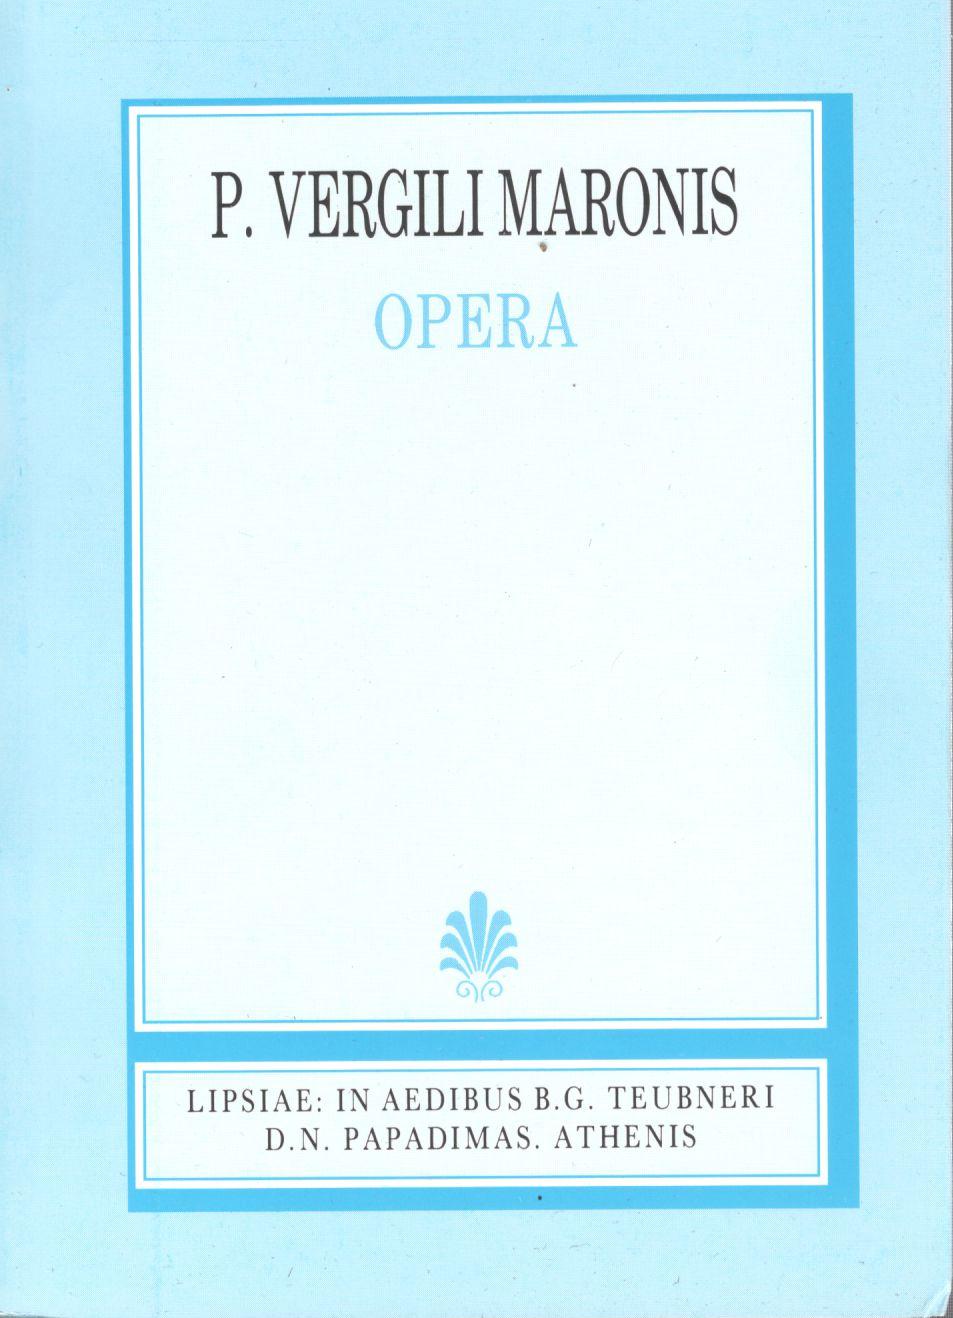 P. Vergili Maronis, Opera, [Ποπλίου Βεργιλίου Μάρωνος, 